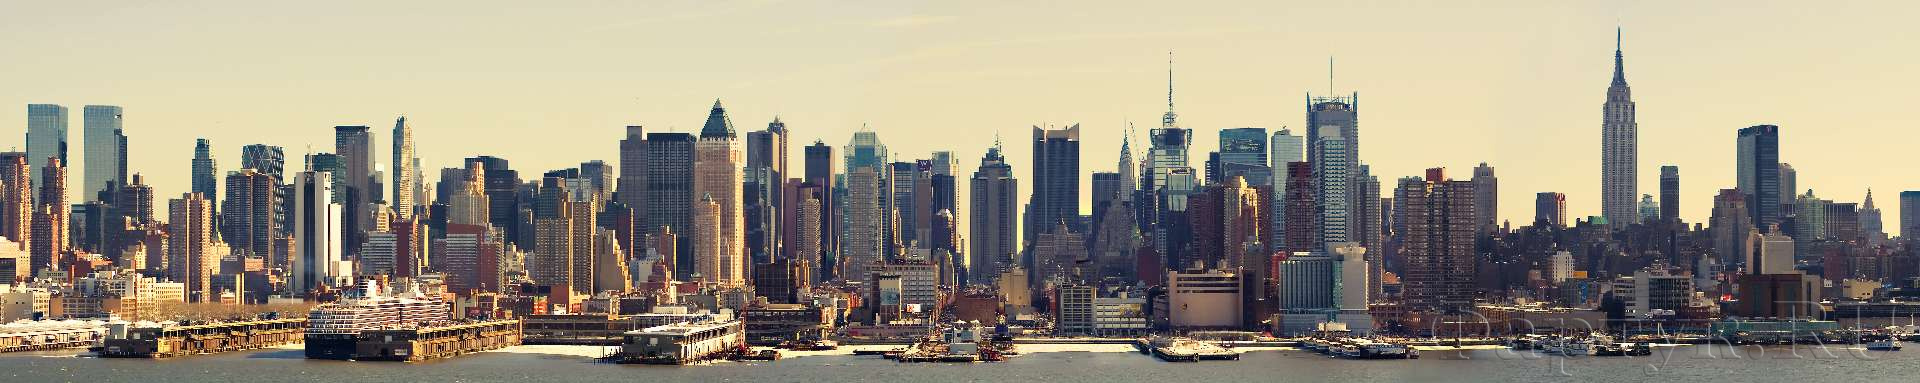 Панорамный вид Манхэттена